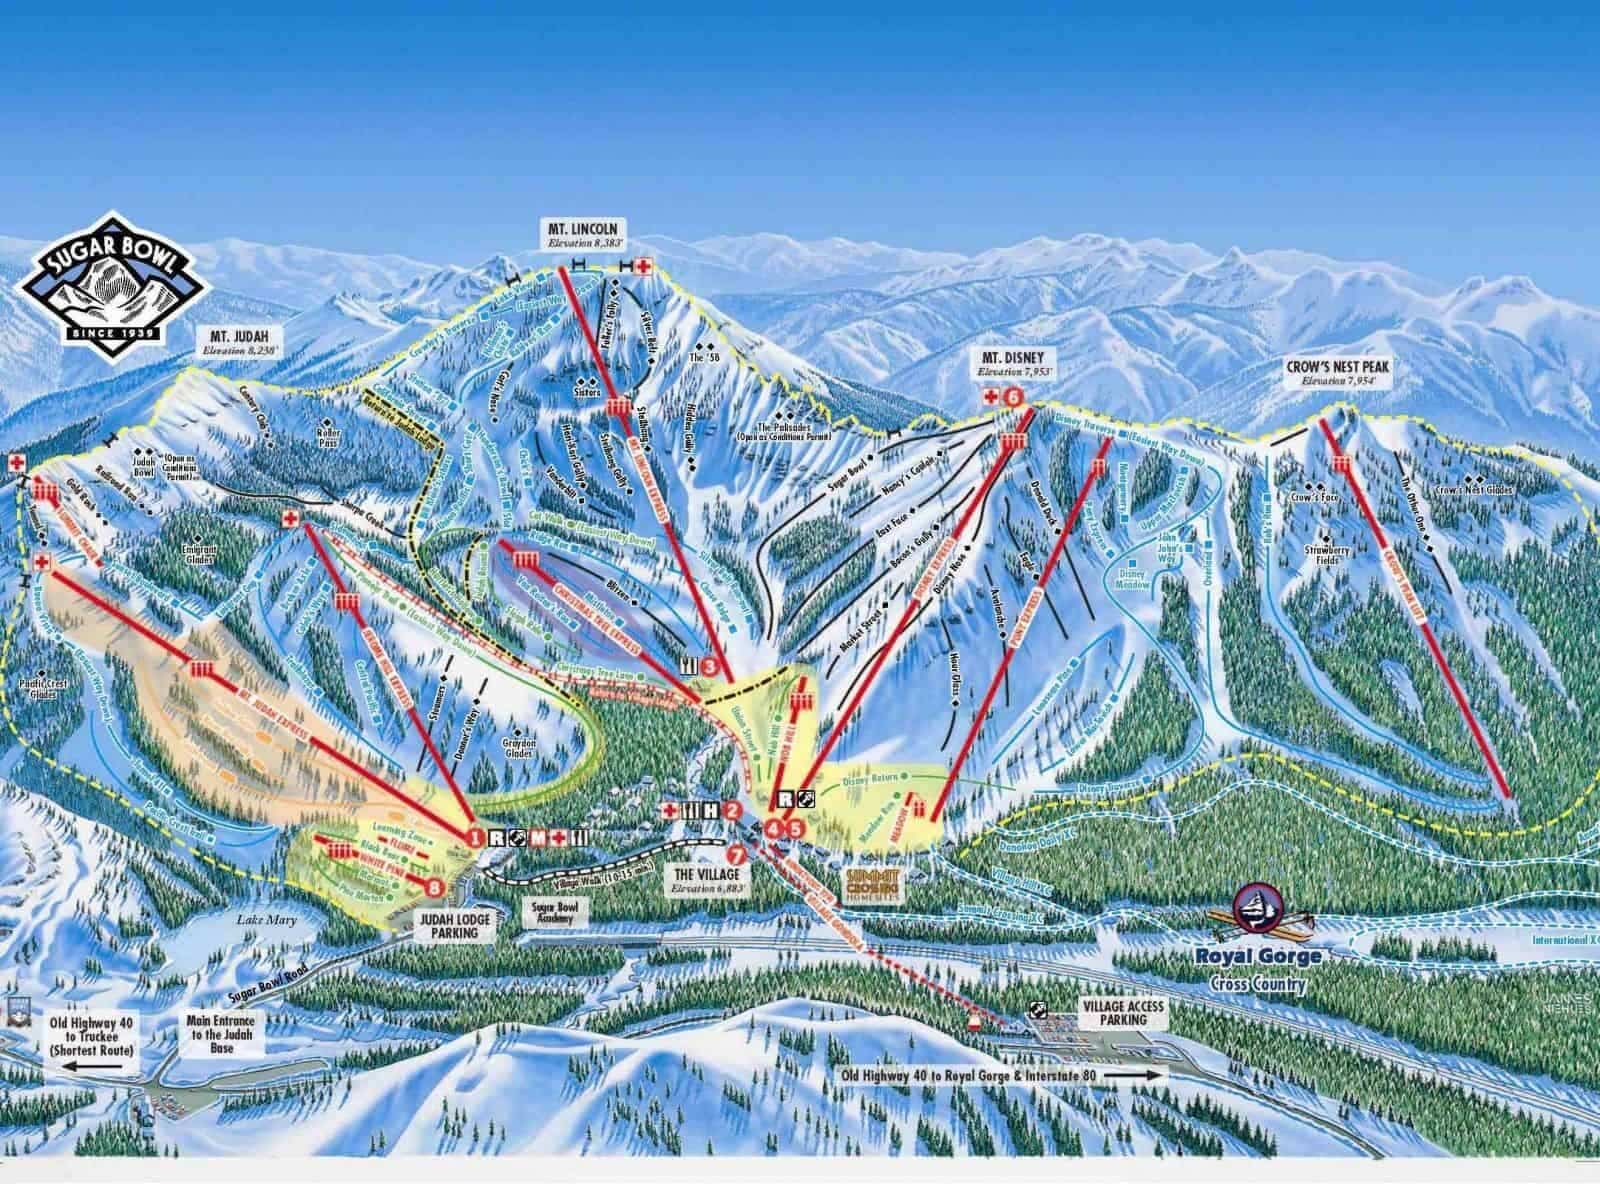 Недорогие горнолыжные курорты россии - туристический блог ласус